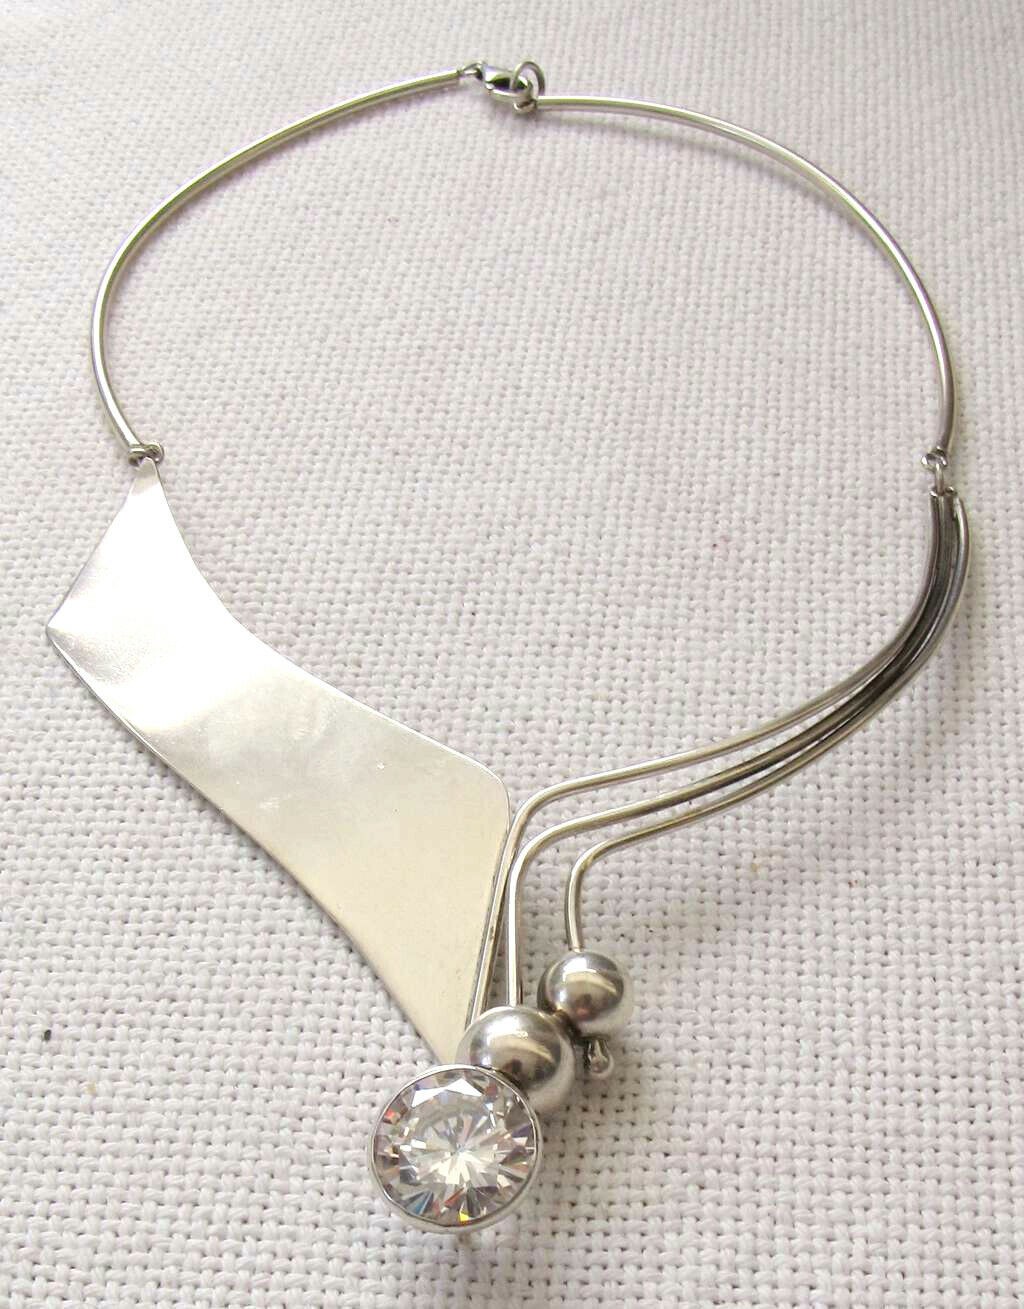 Avi Soffer Vintage Modernist Silver Sterling Collar Necklace W/ Rock Crystal 46g